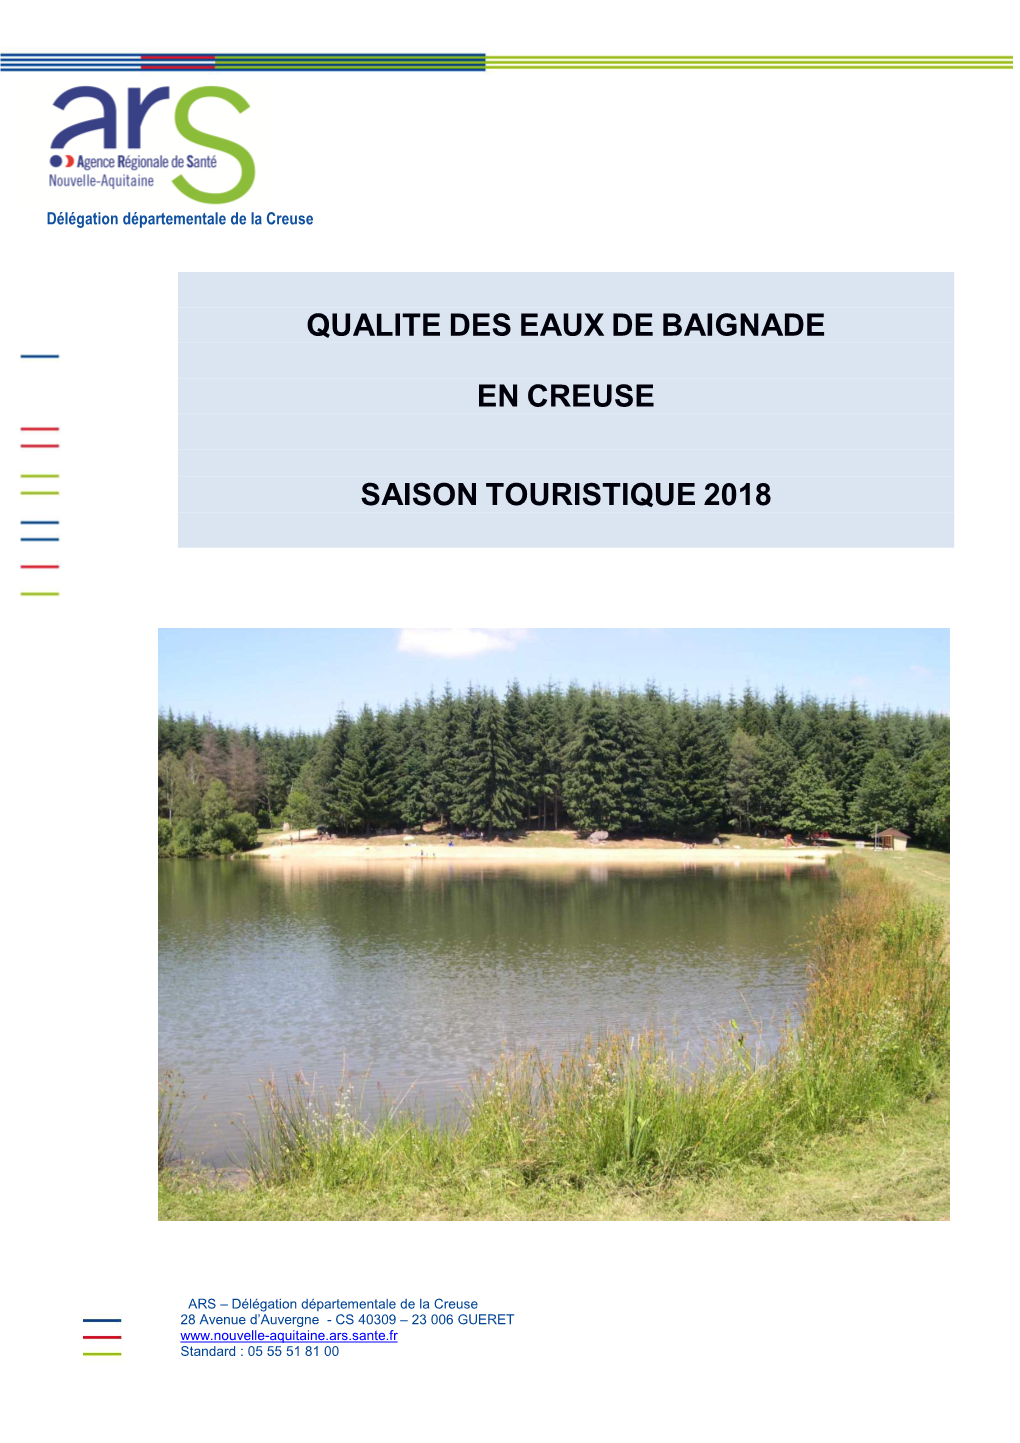 Qualite Des Eaux De Baignade En Creuse Saison Touristique 2018